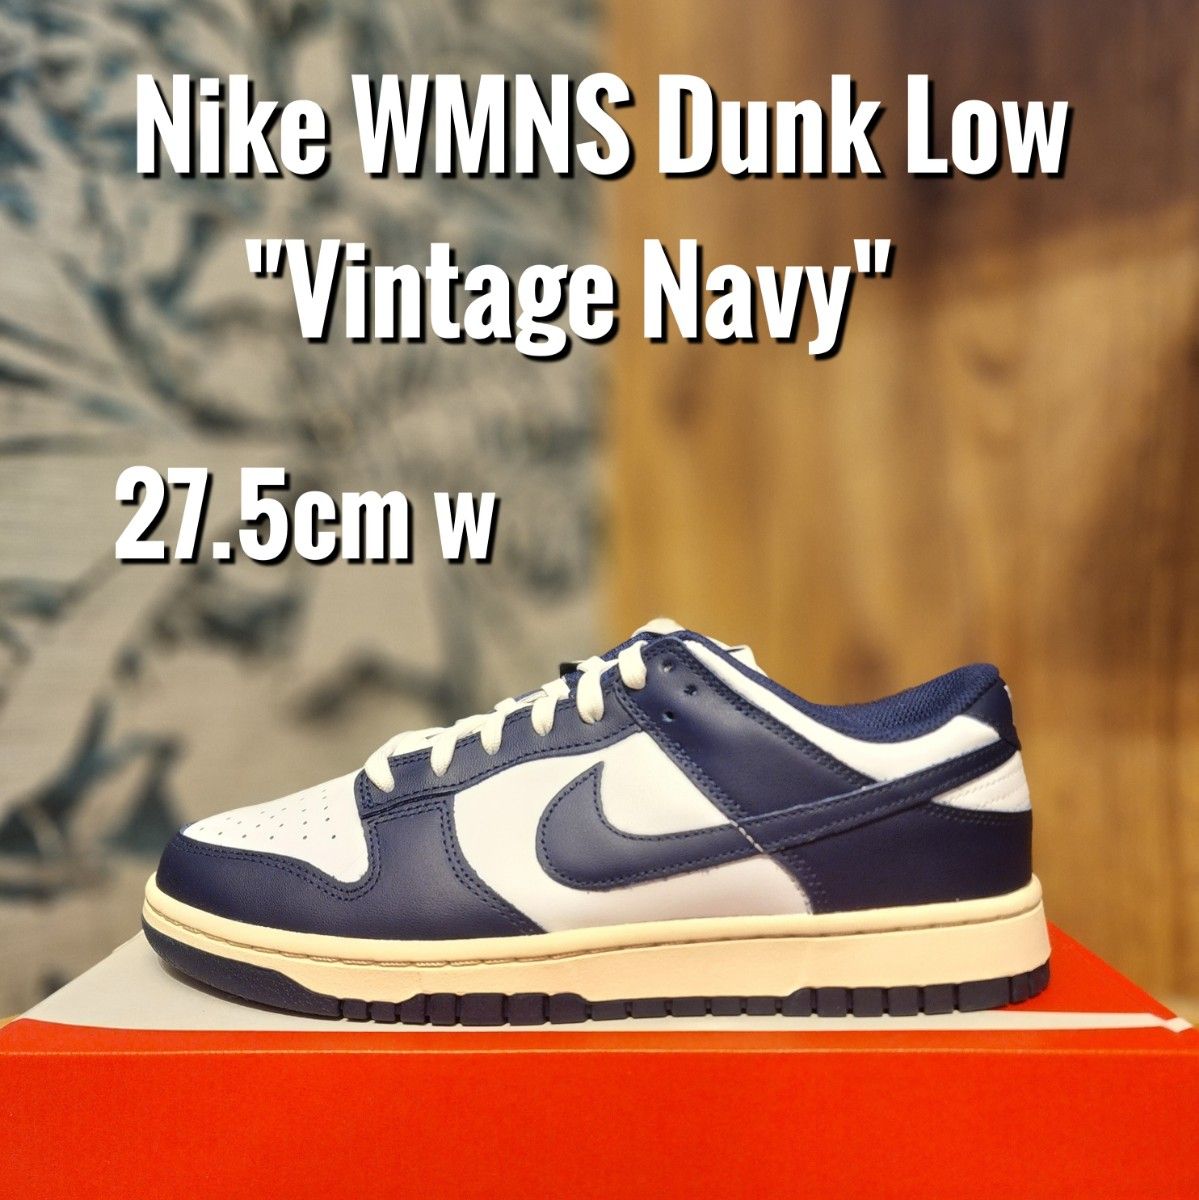 ナイキ ウィメンズ ダンク ロー ヴィンテージ ネイビー スニーカーNike WMNS Dunk Low Vintage Navy